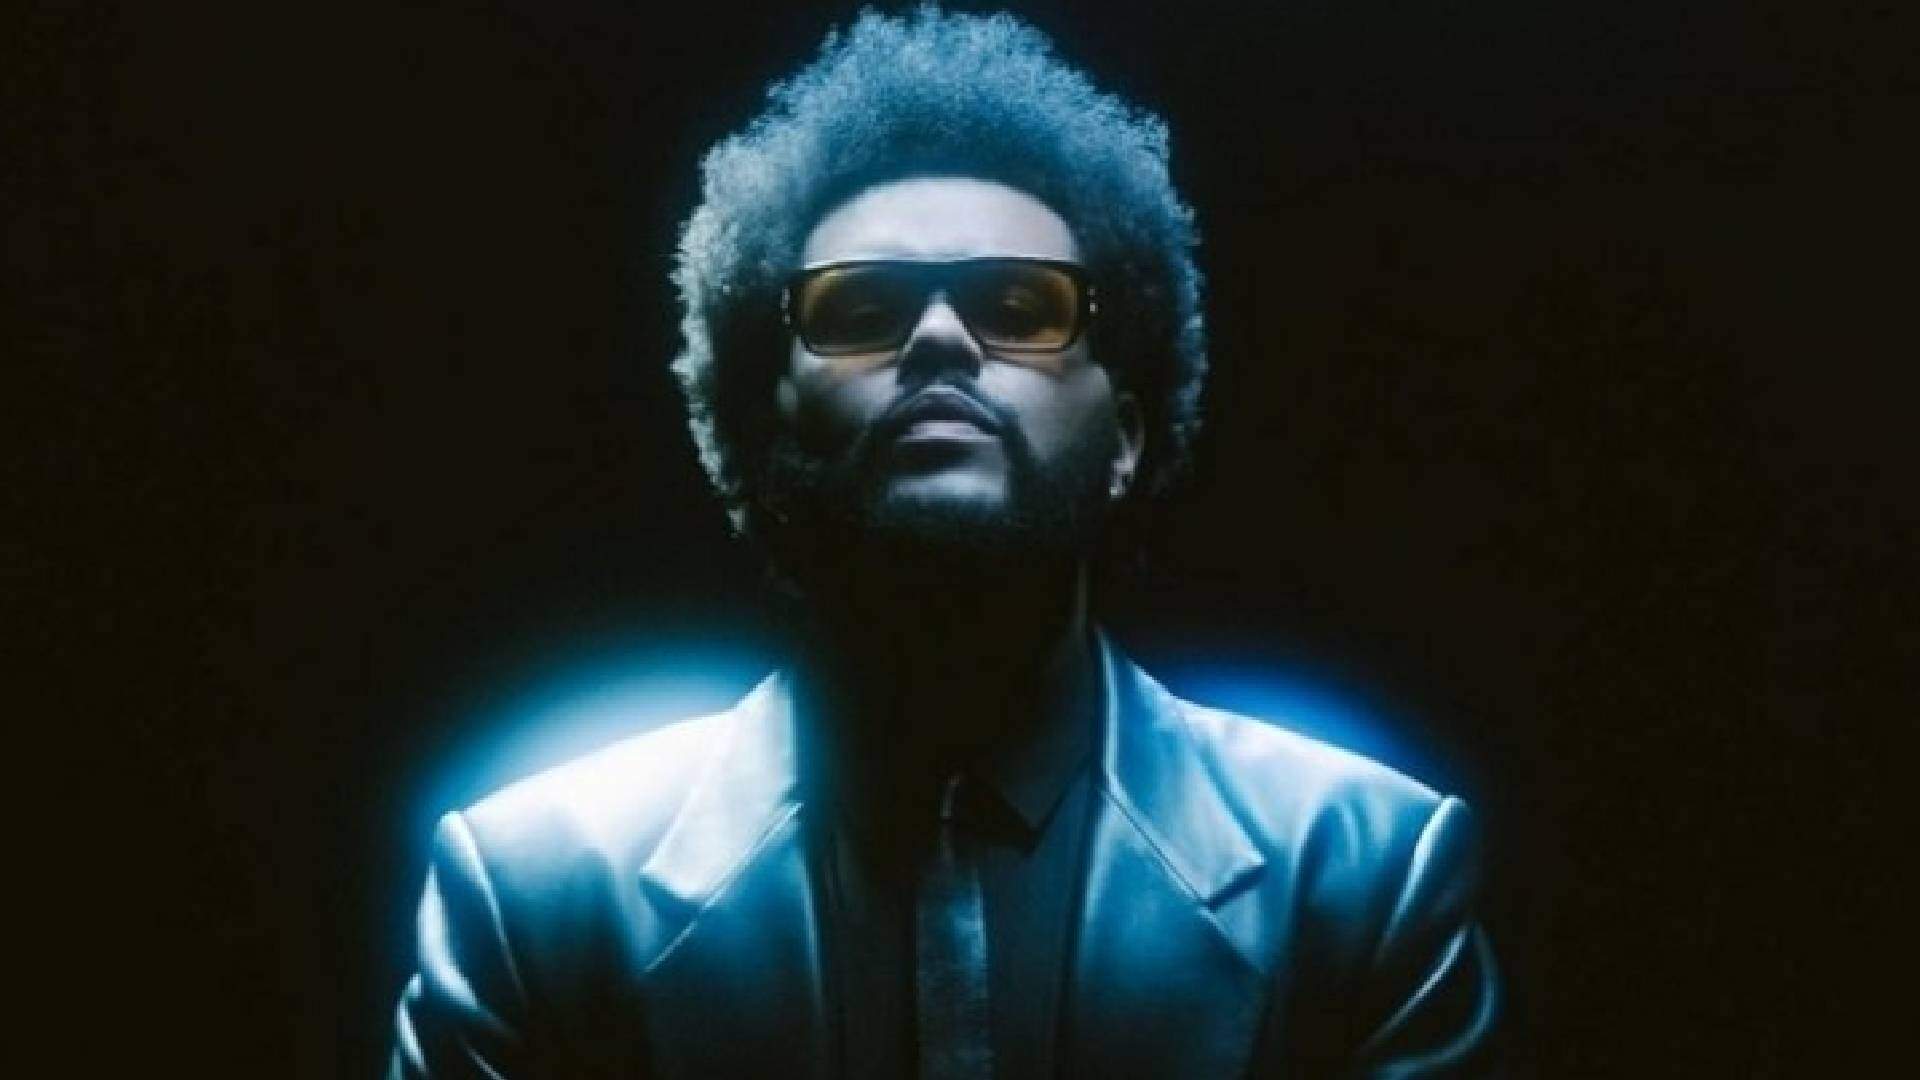 De surpresa, The Weeknd faz lançamento inusitado e fãs vão à loucura: “Não esperava” - Metropolitana FM